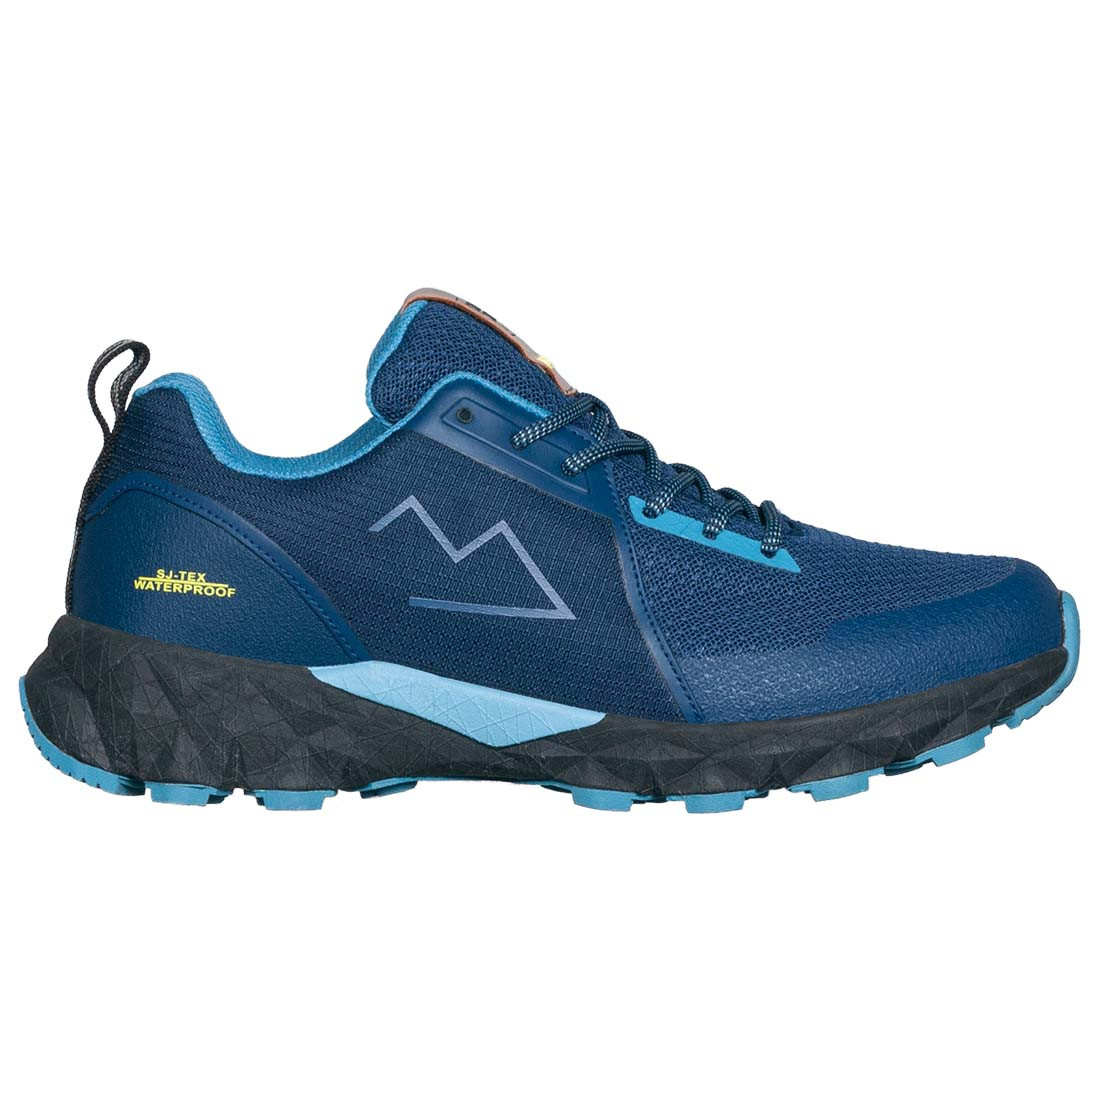 TAMAN Versatile and waterproof trail shoe - Footwear